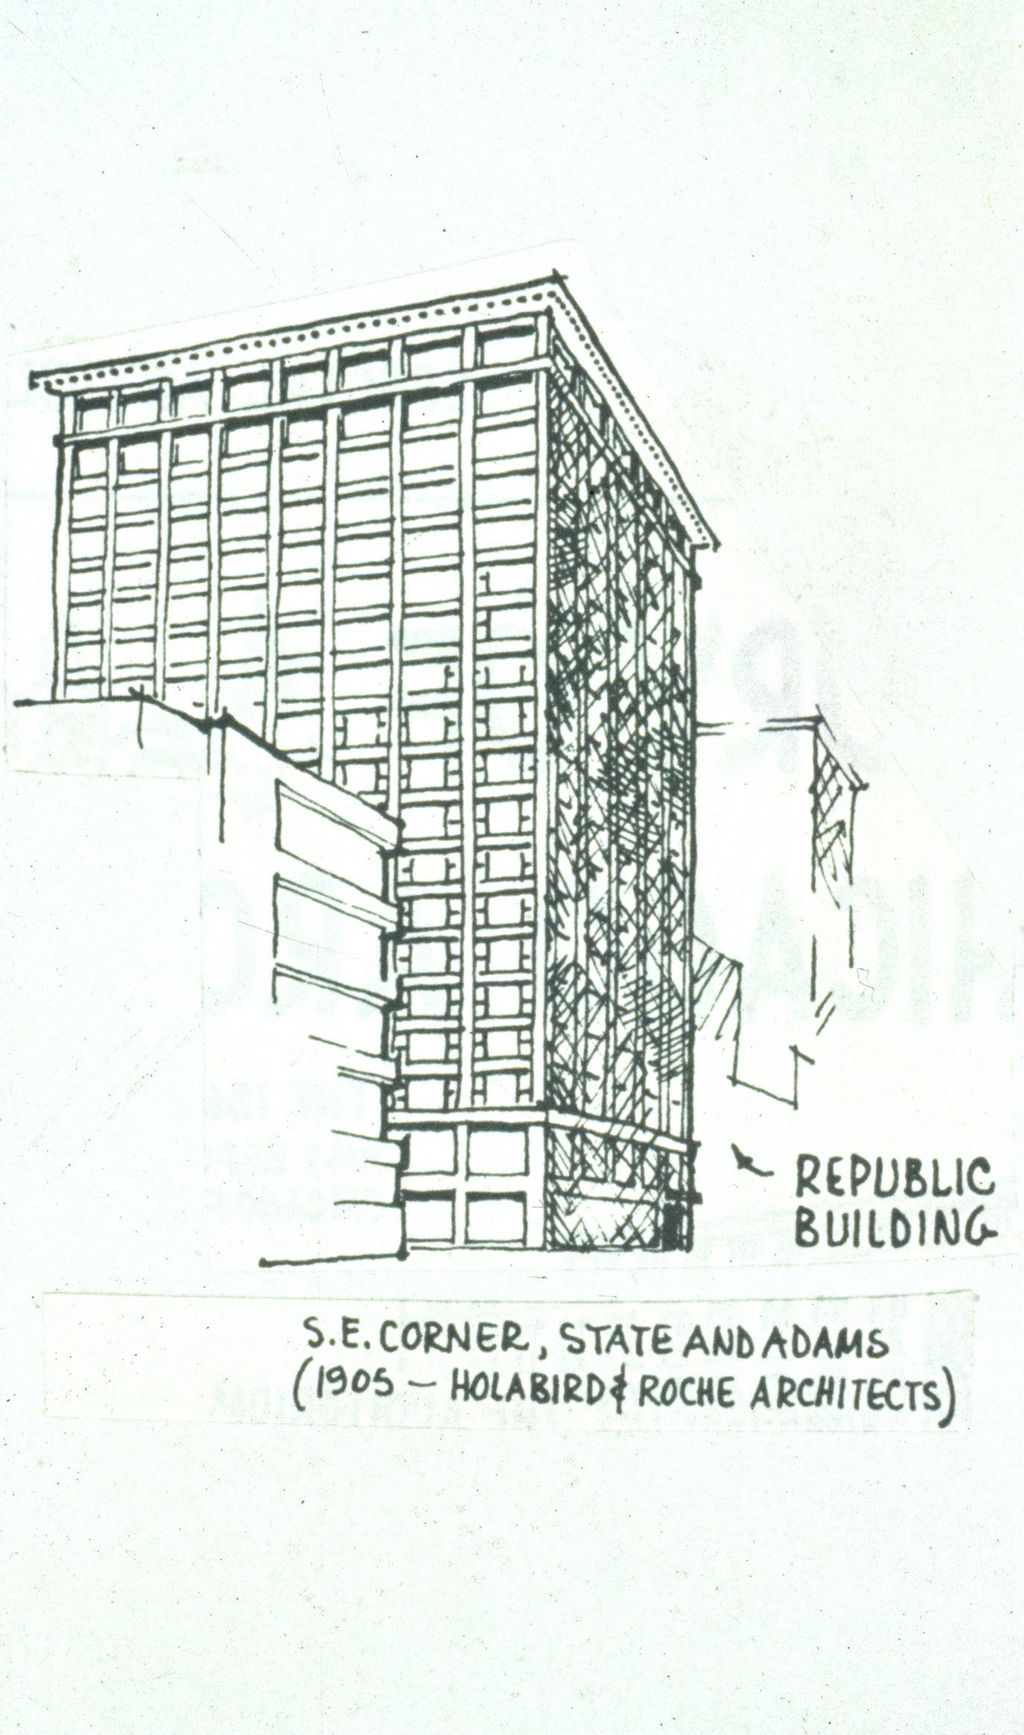 Miniature of Republic Building